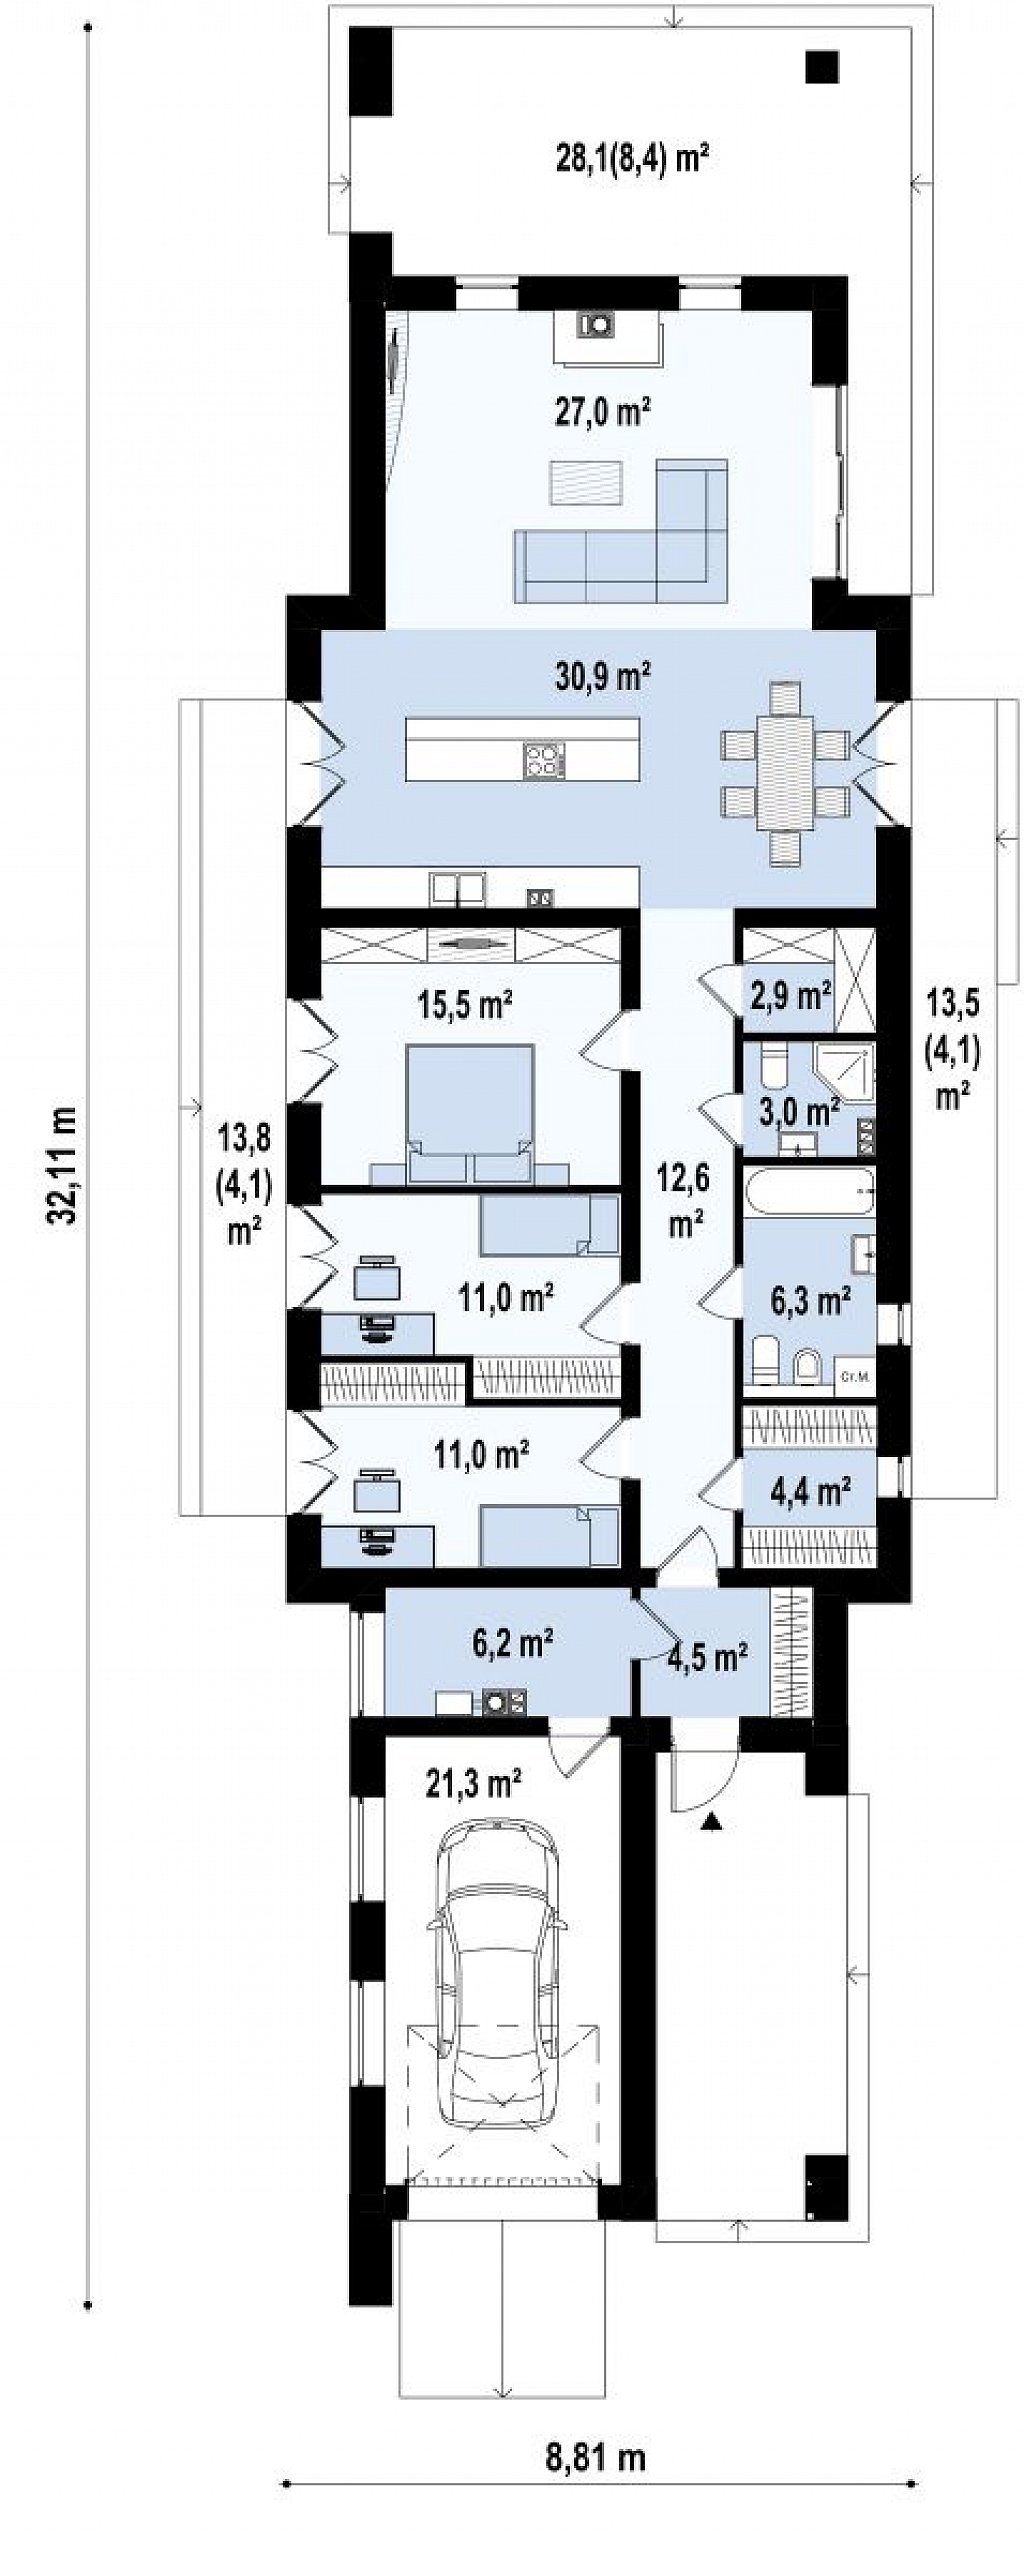 Комфортный одноэтажный дом для узкого участка. план помещений 1